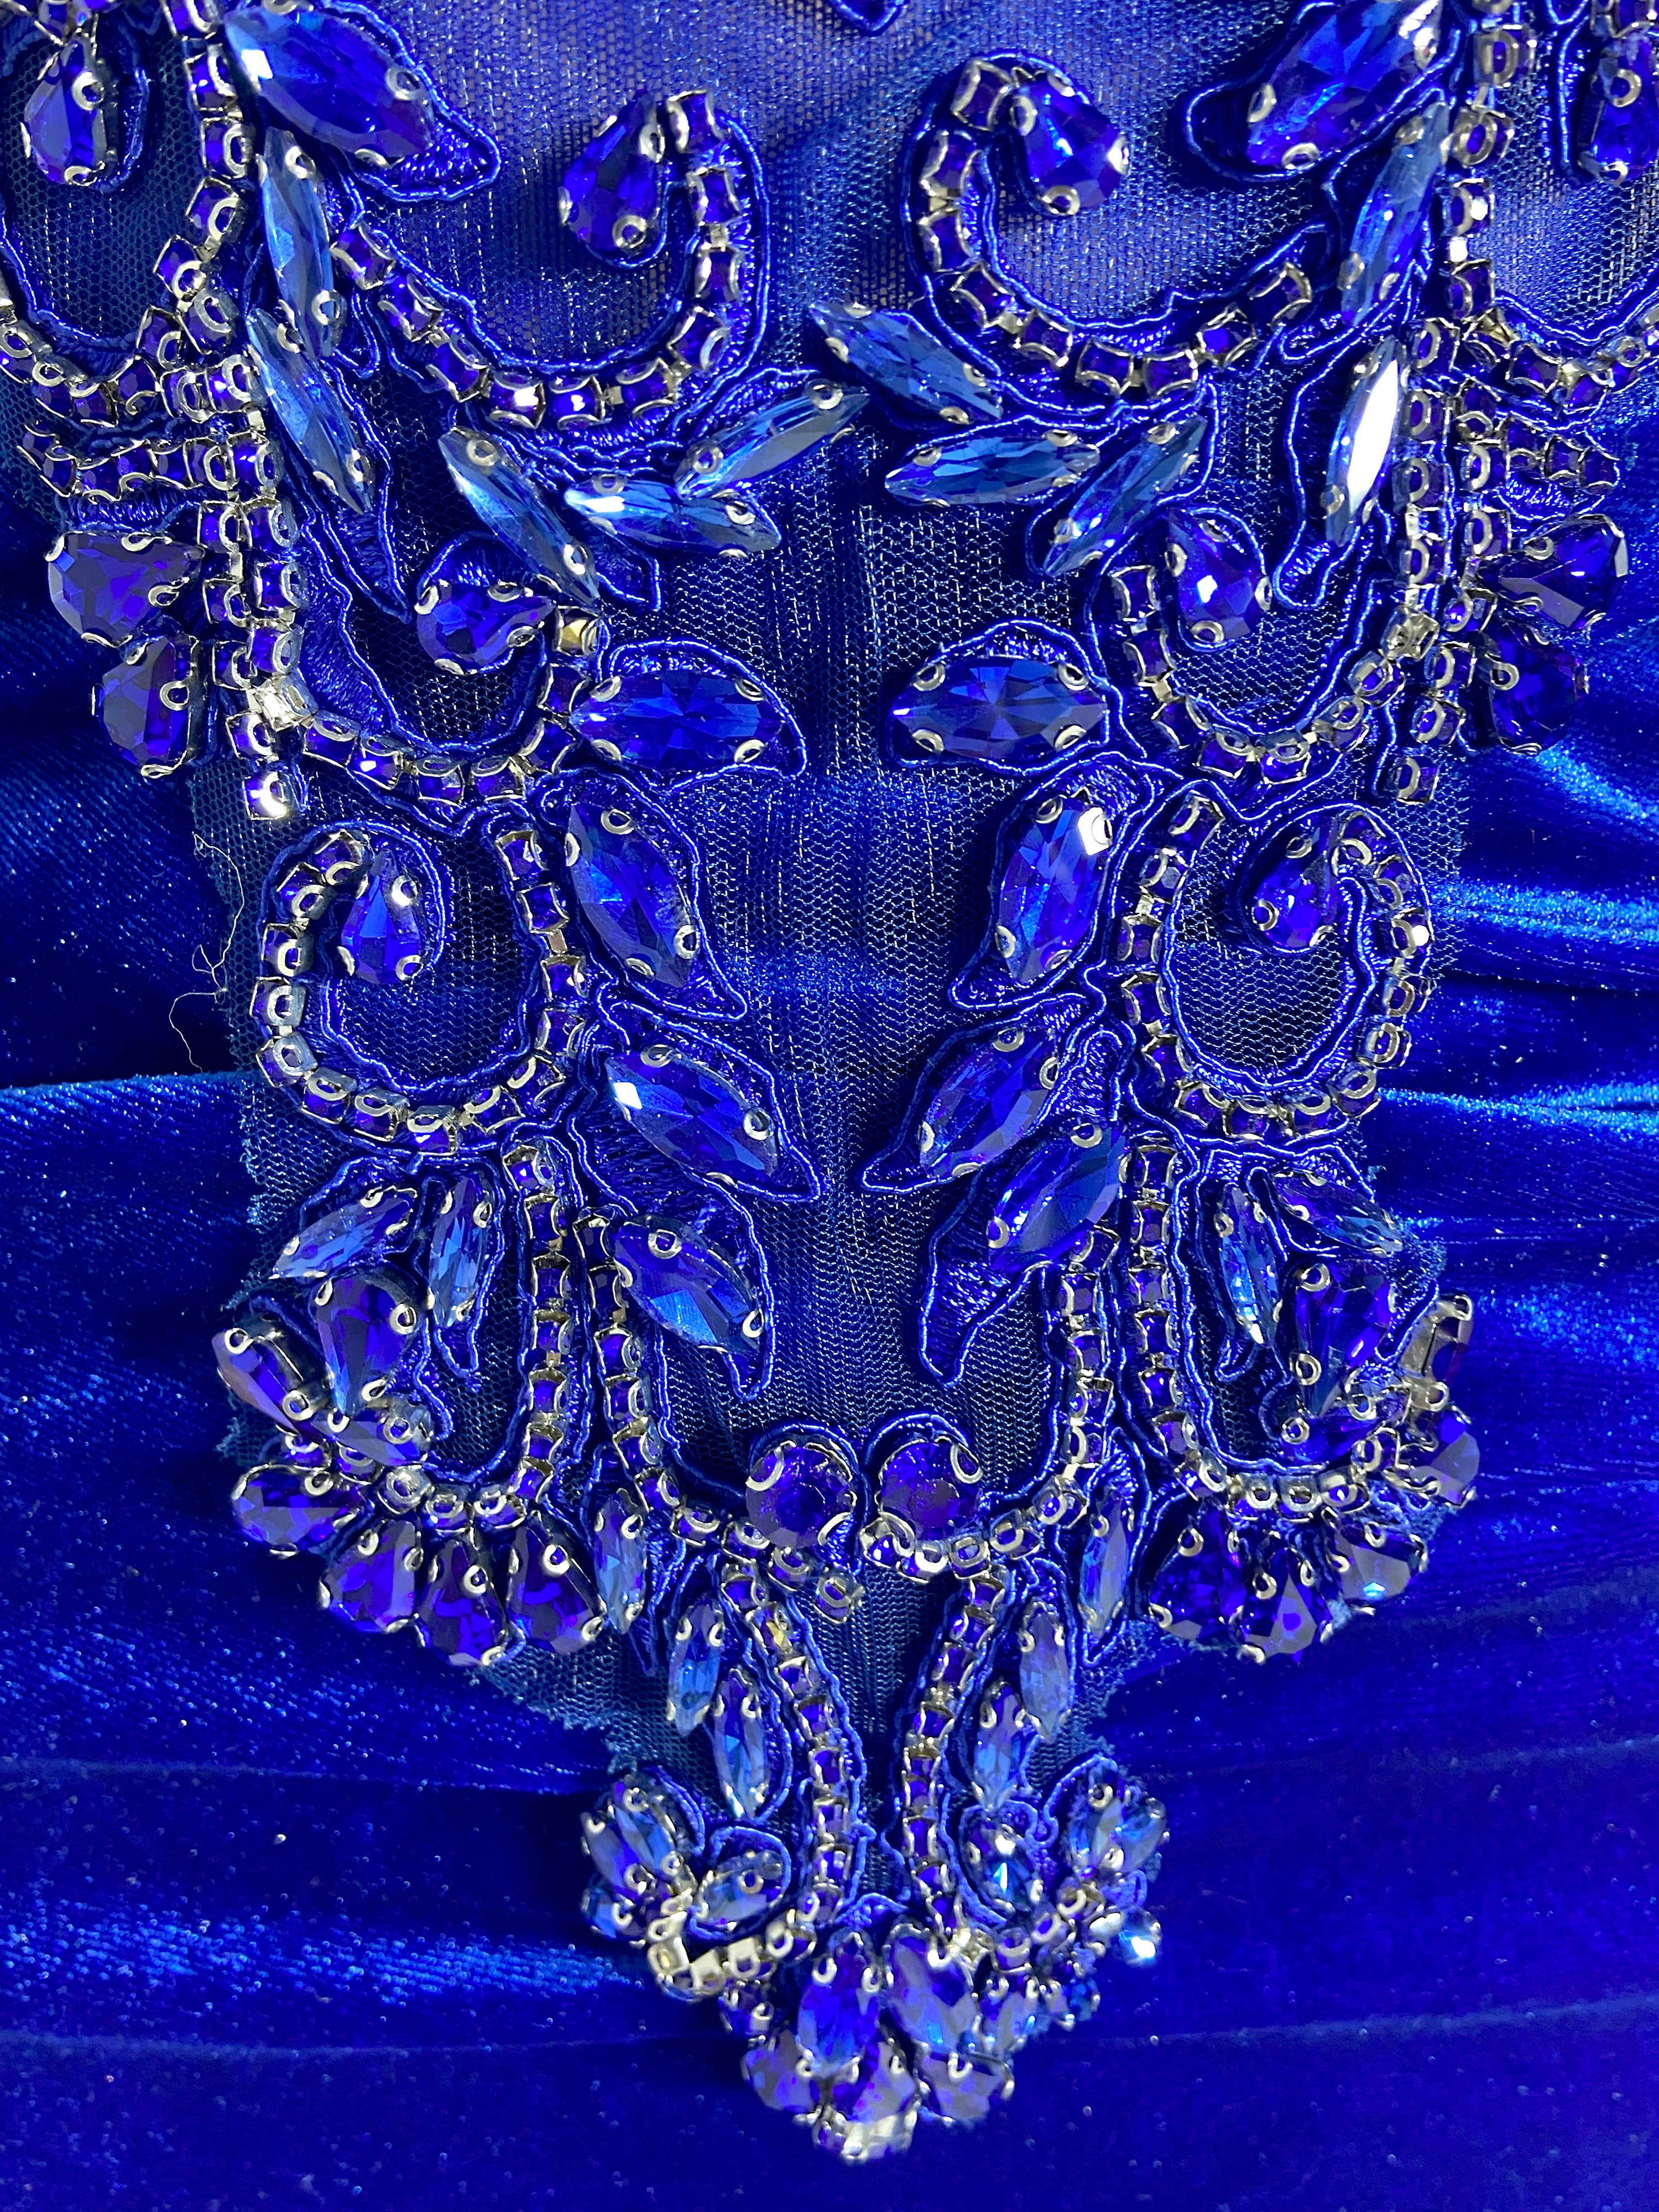 Royal Blue Halter Mini Dress